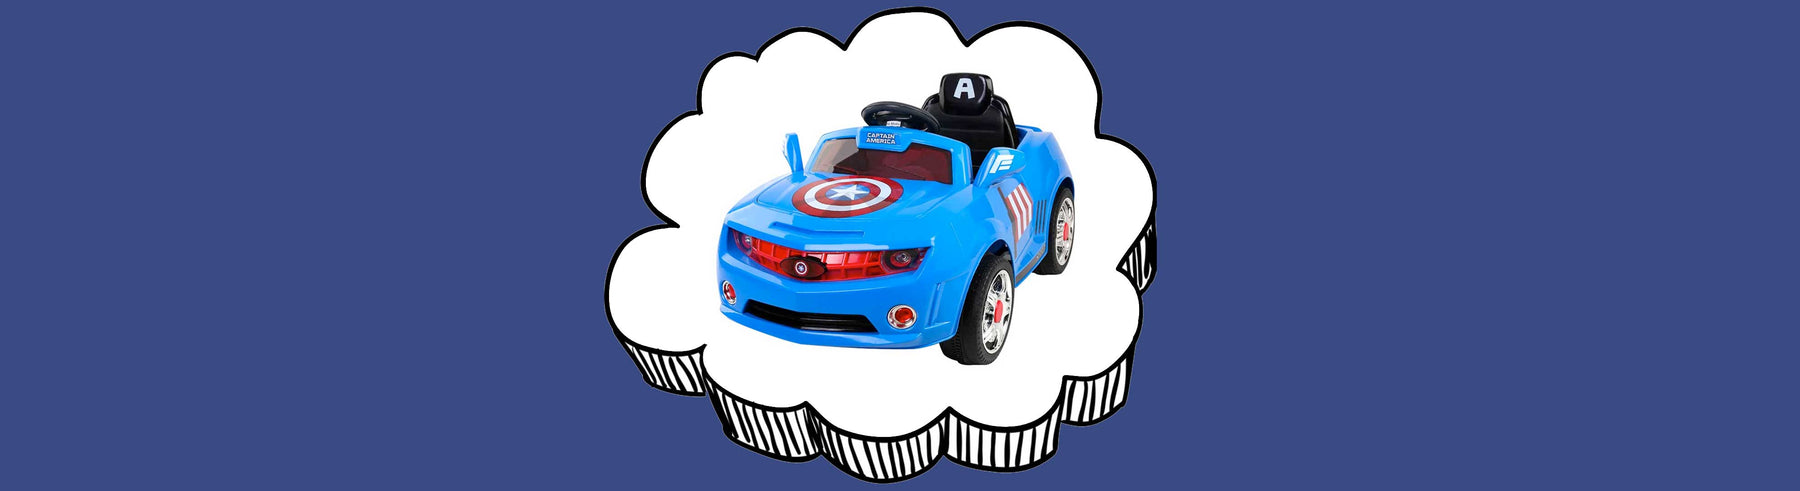 Disney Licensed Avengers Captain America Kids Ride On Car